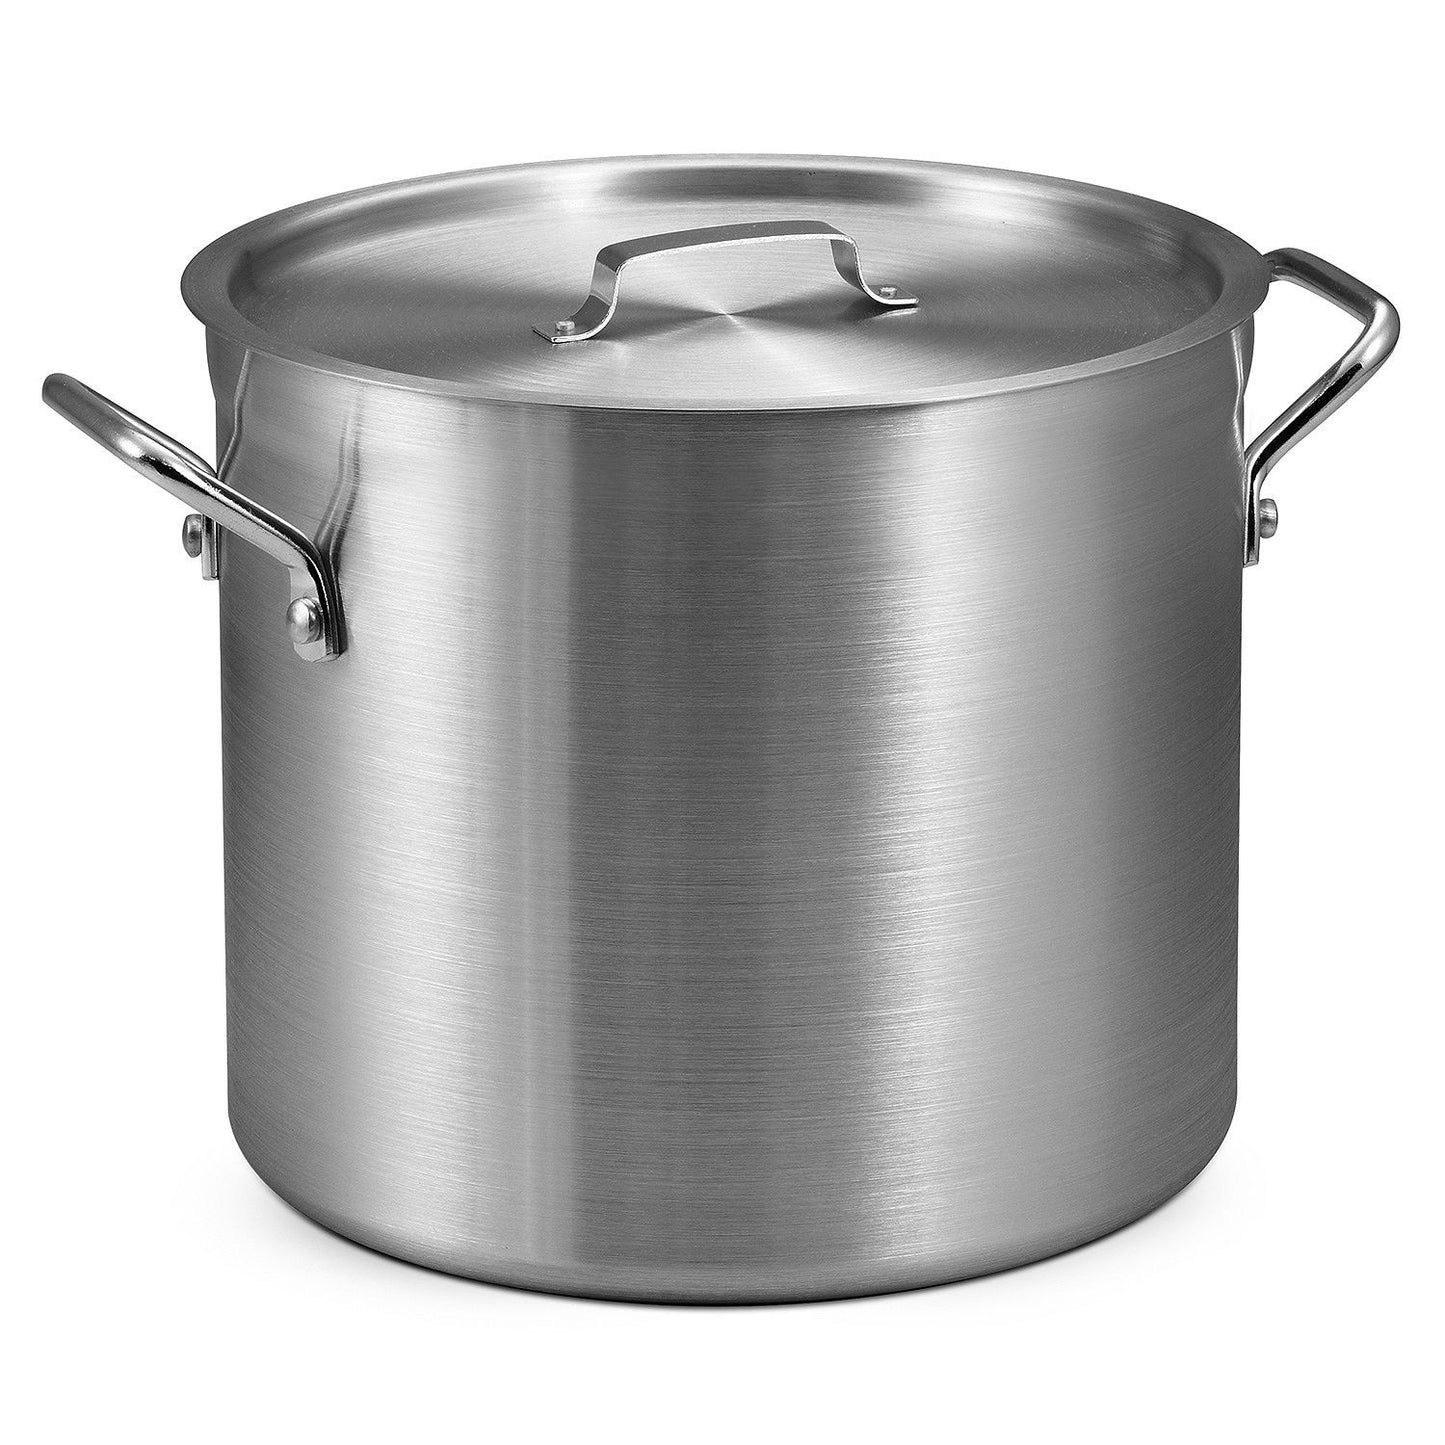 Salerno 24-Quart Aluminum Stock Pot